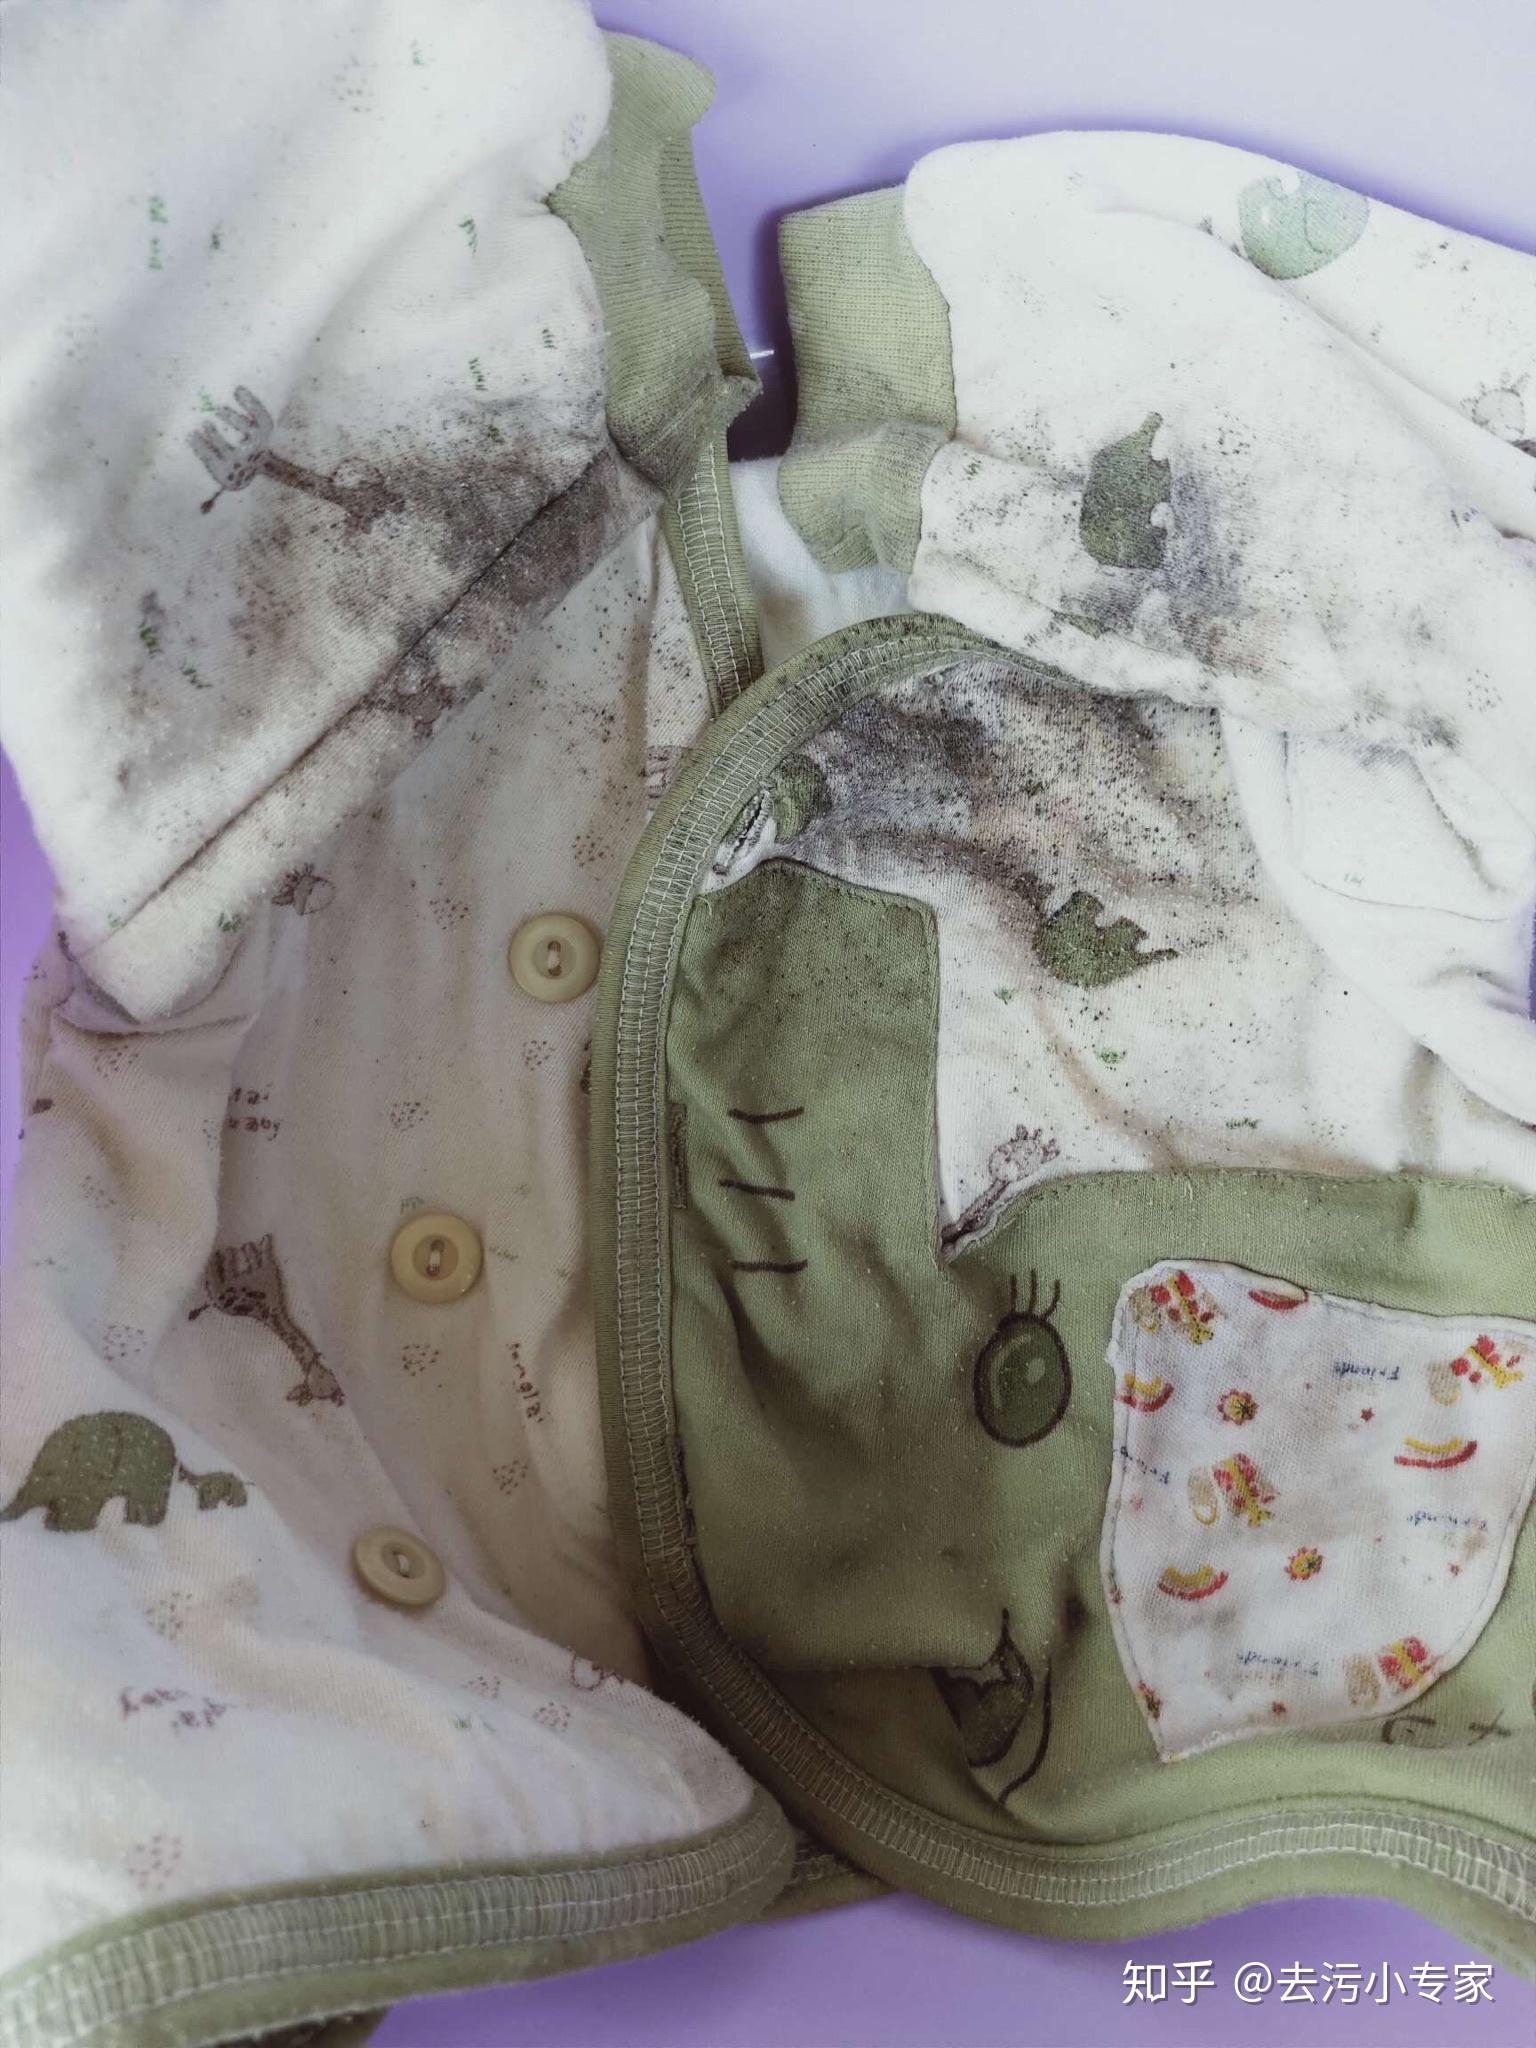 衣服上的霉菌会洗掉吗? 